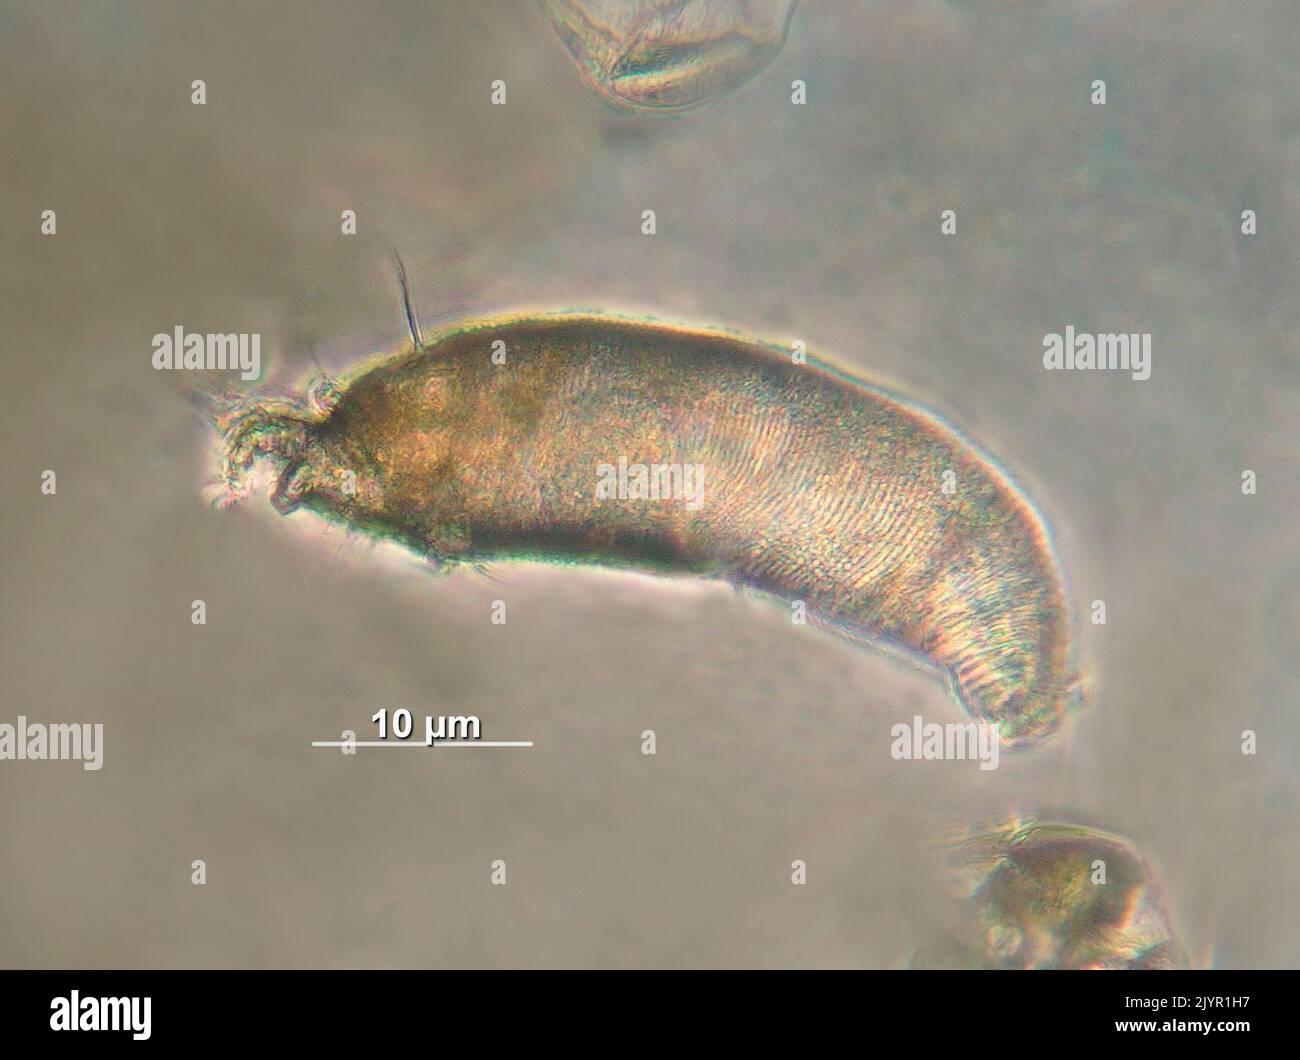 Colomerus vitis (Pagenstecher, 1857) Eine Art der Familie Eriophyidae. Diese Milben sind mikroskopisch groß. Der auf diesem Foto ist nur 43 µm (1/2 Millimeter) groß und daher ohne optische Geräte wie ein Mikroskop völlig unsichtbar. Die Colomier Milben leben auf der Unterseite der Weinblätter, wo ihre Bisse aufgrund der Bildung zahlreicher Filamente eine Reaktion der Pflanze in Form von Blasen verursachen. Die Milben leben mitten in diesen Filamenten und sind fast unsichtbar. Diese Krankheit wird als Weinrebenerinose bezeichnet. Stockfoto